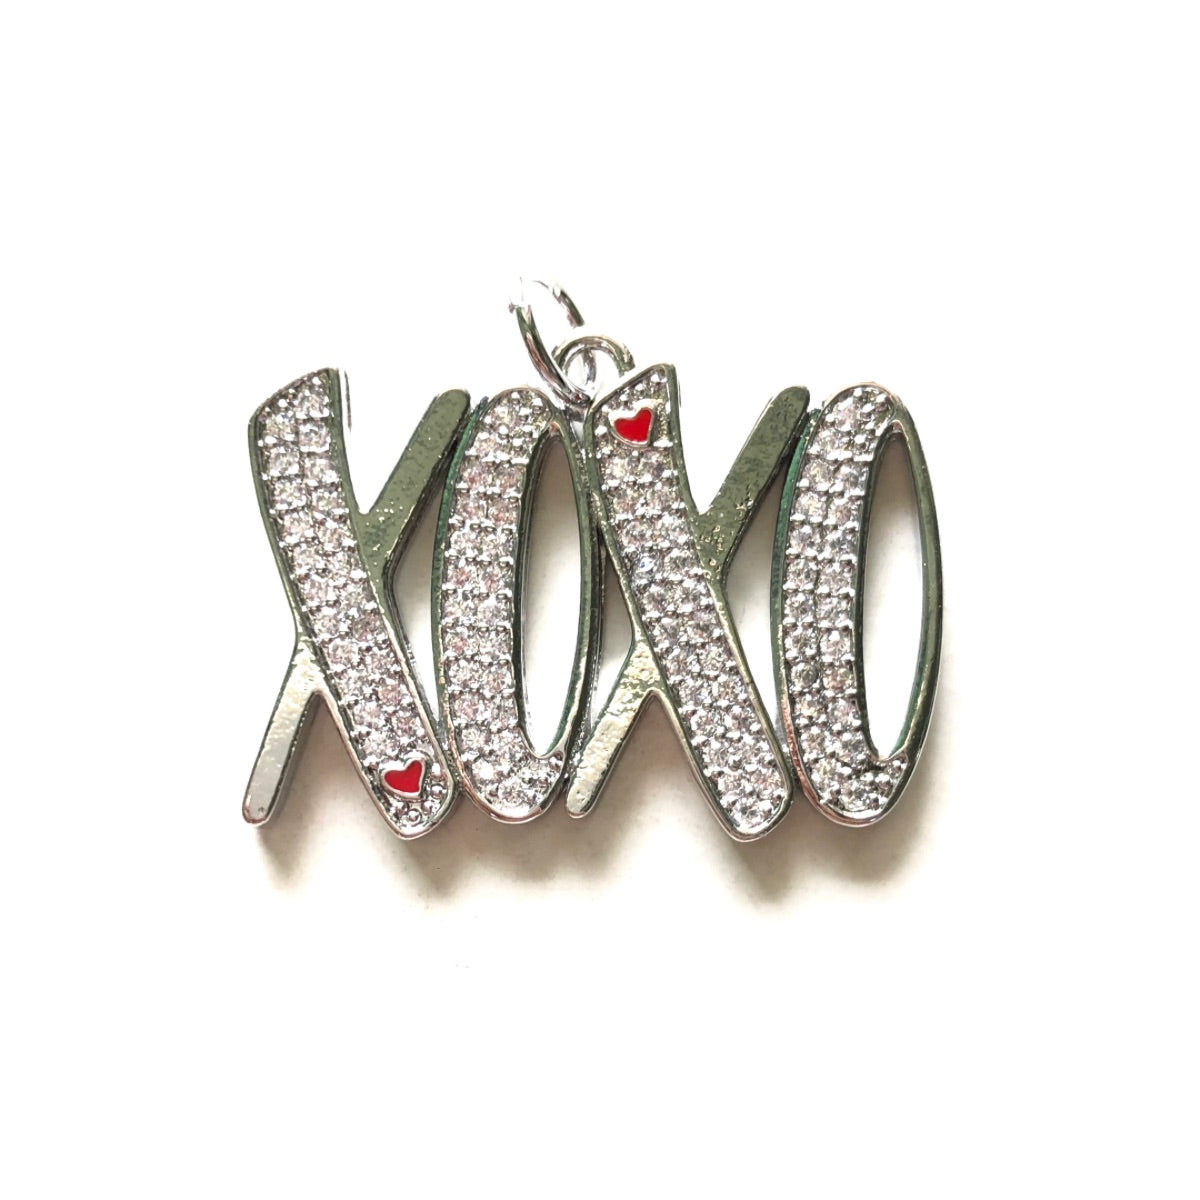 10pcs/lot CZ Paved XOXO Word Charms Silver CZ Paved Charms New Charms Arrivals Words & Quotes Charms Beads Beyond